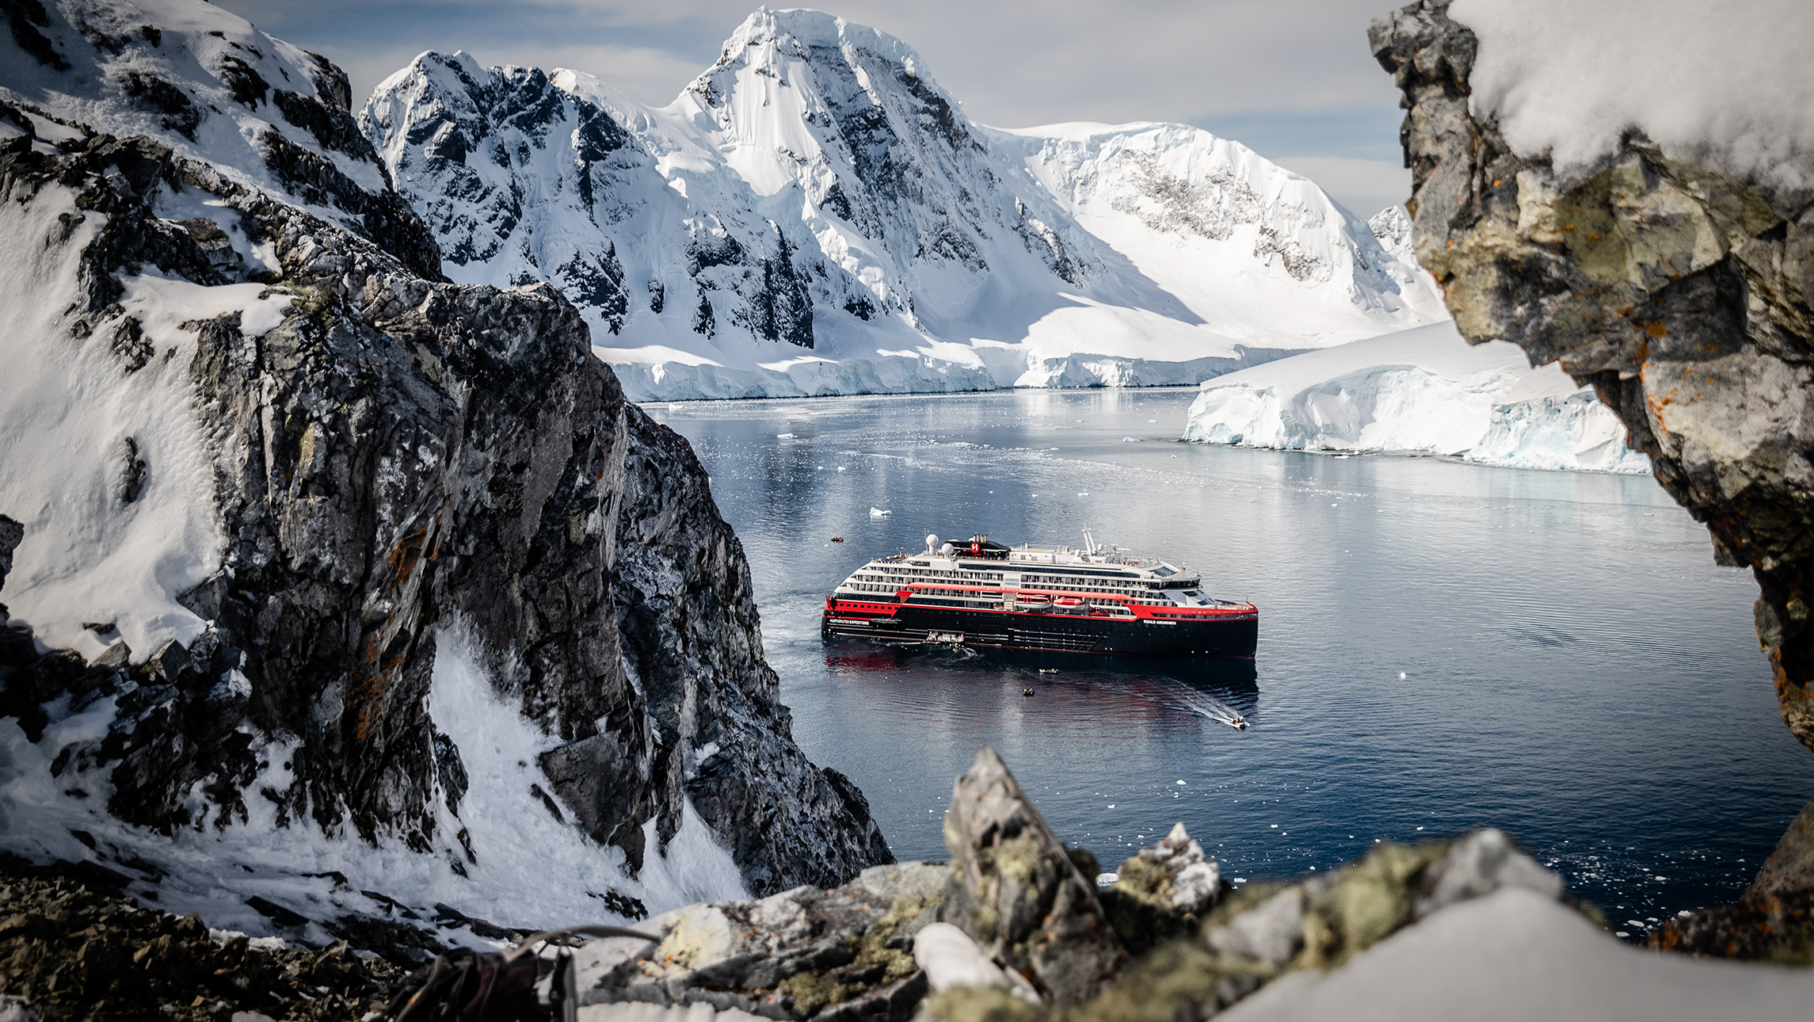 A Hurtigruten ship in Antarctica surrounded by snow mountains